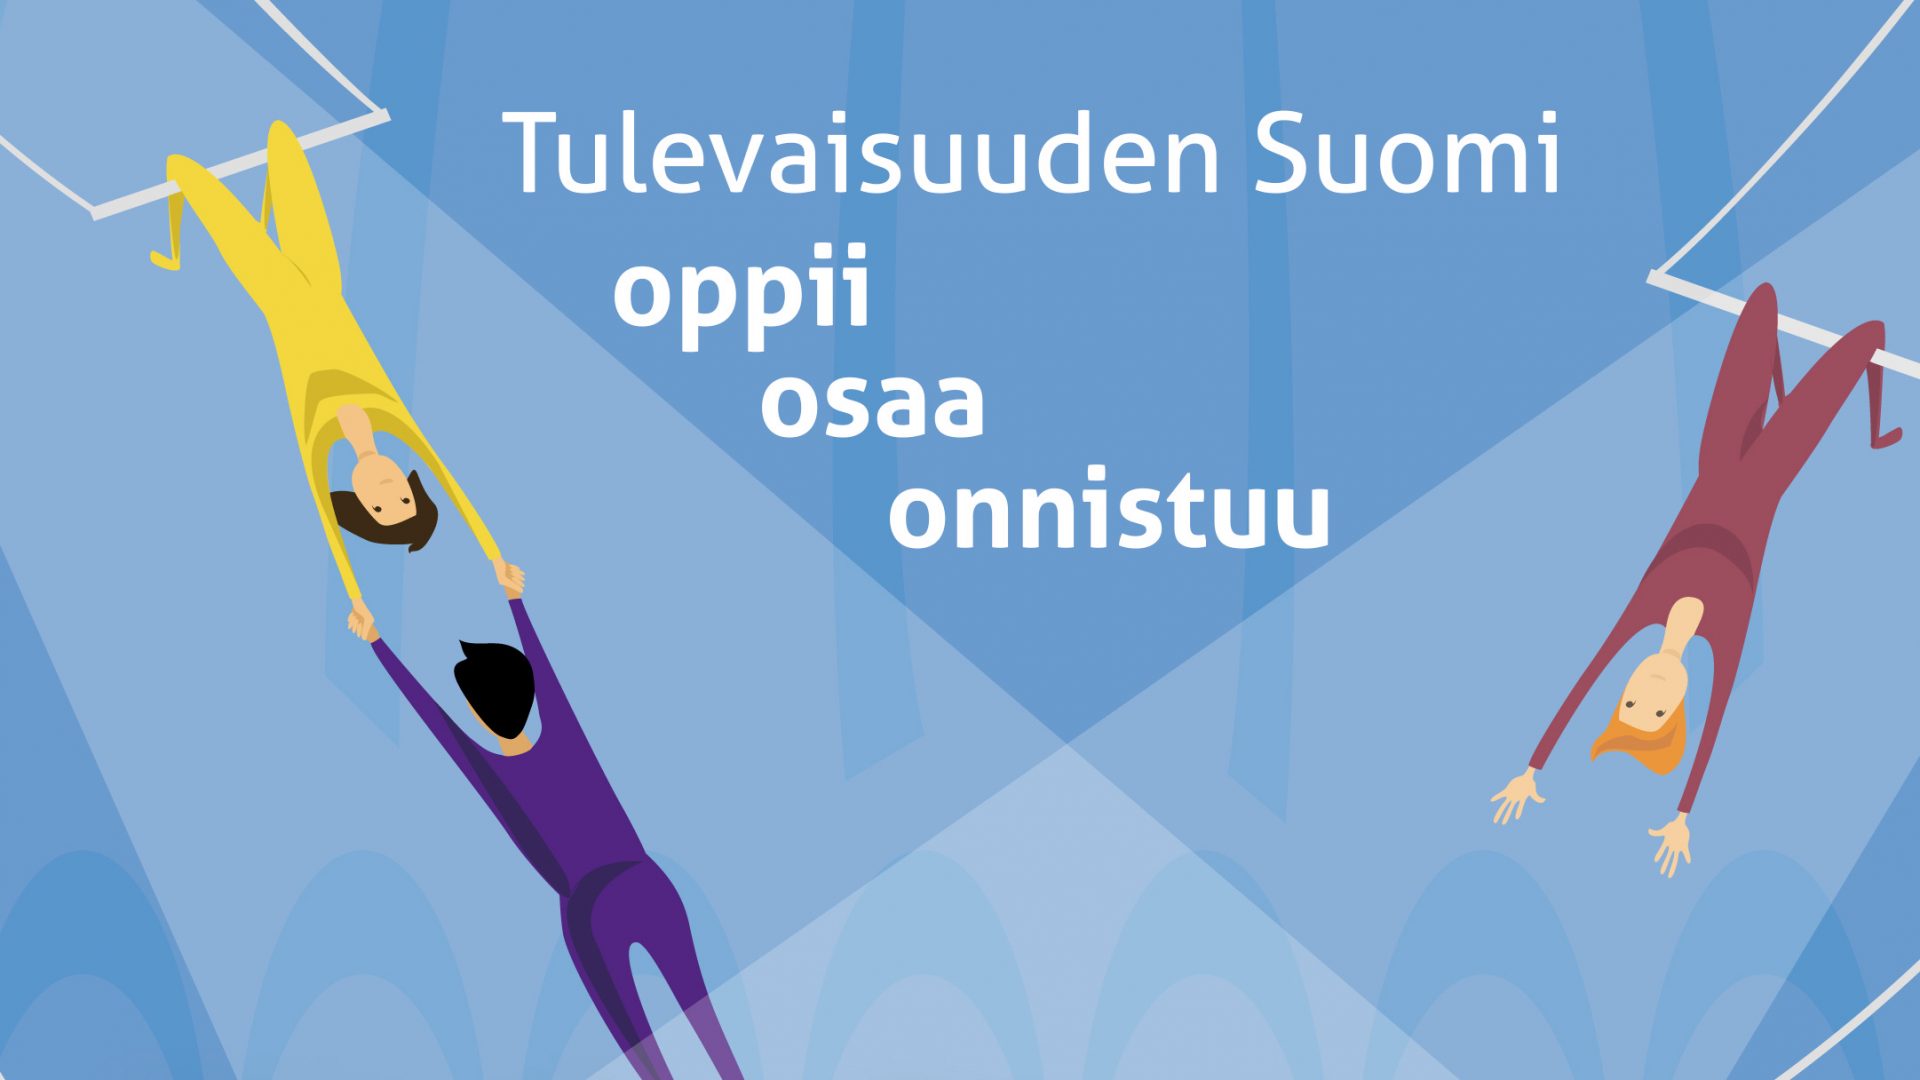 Tulevaisuuden Suomi oppii, osaa ja onnistuu